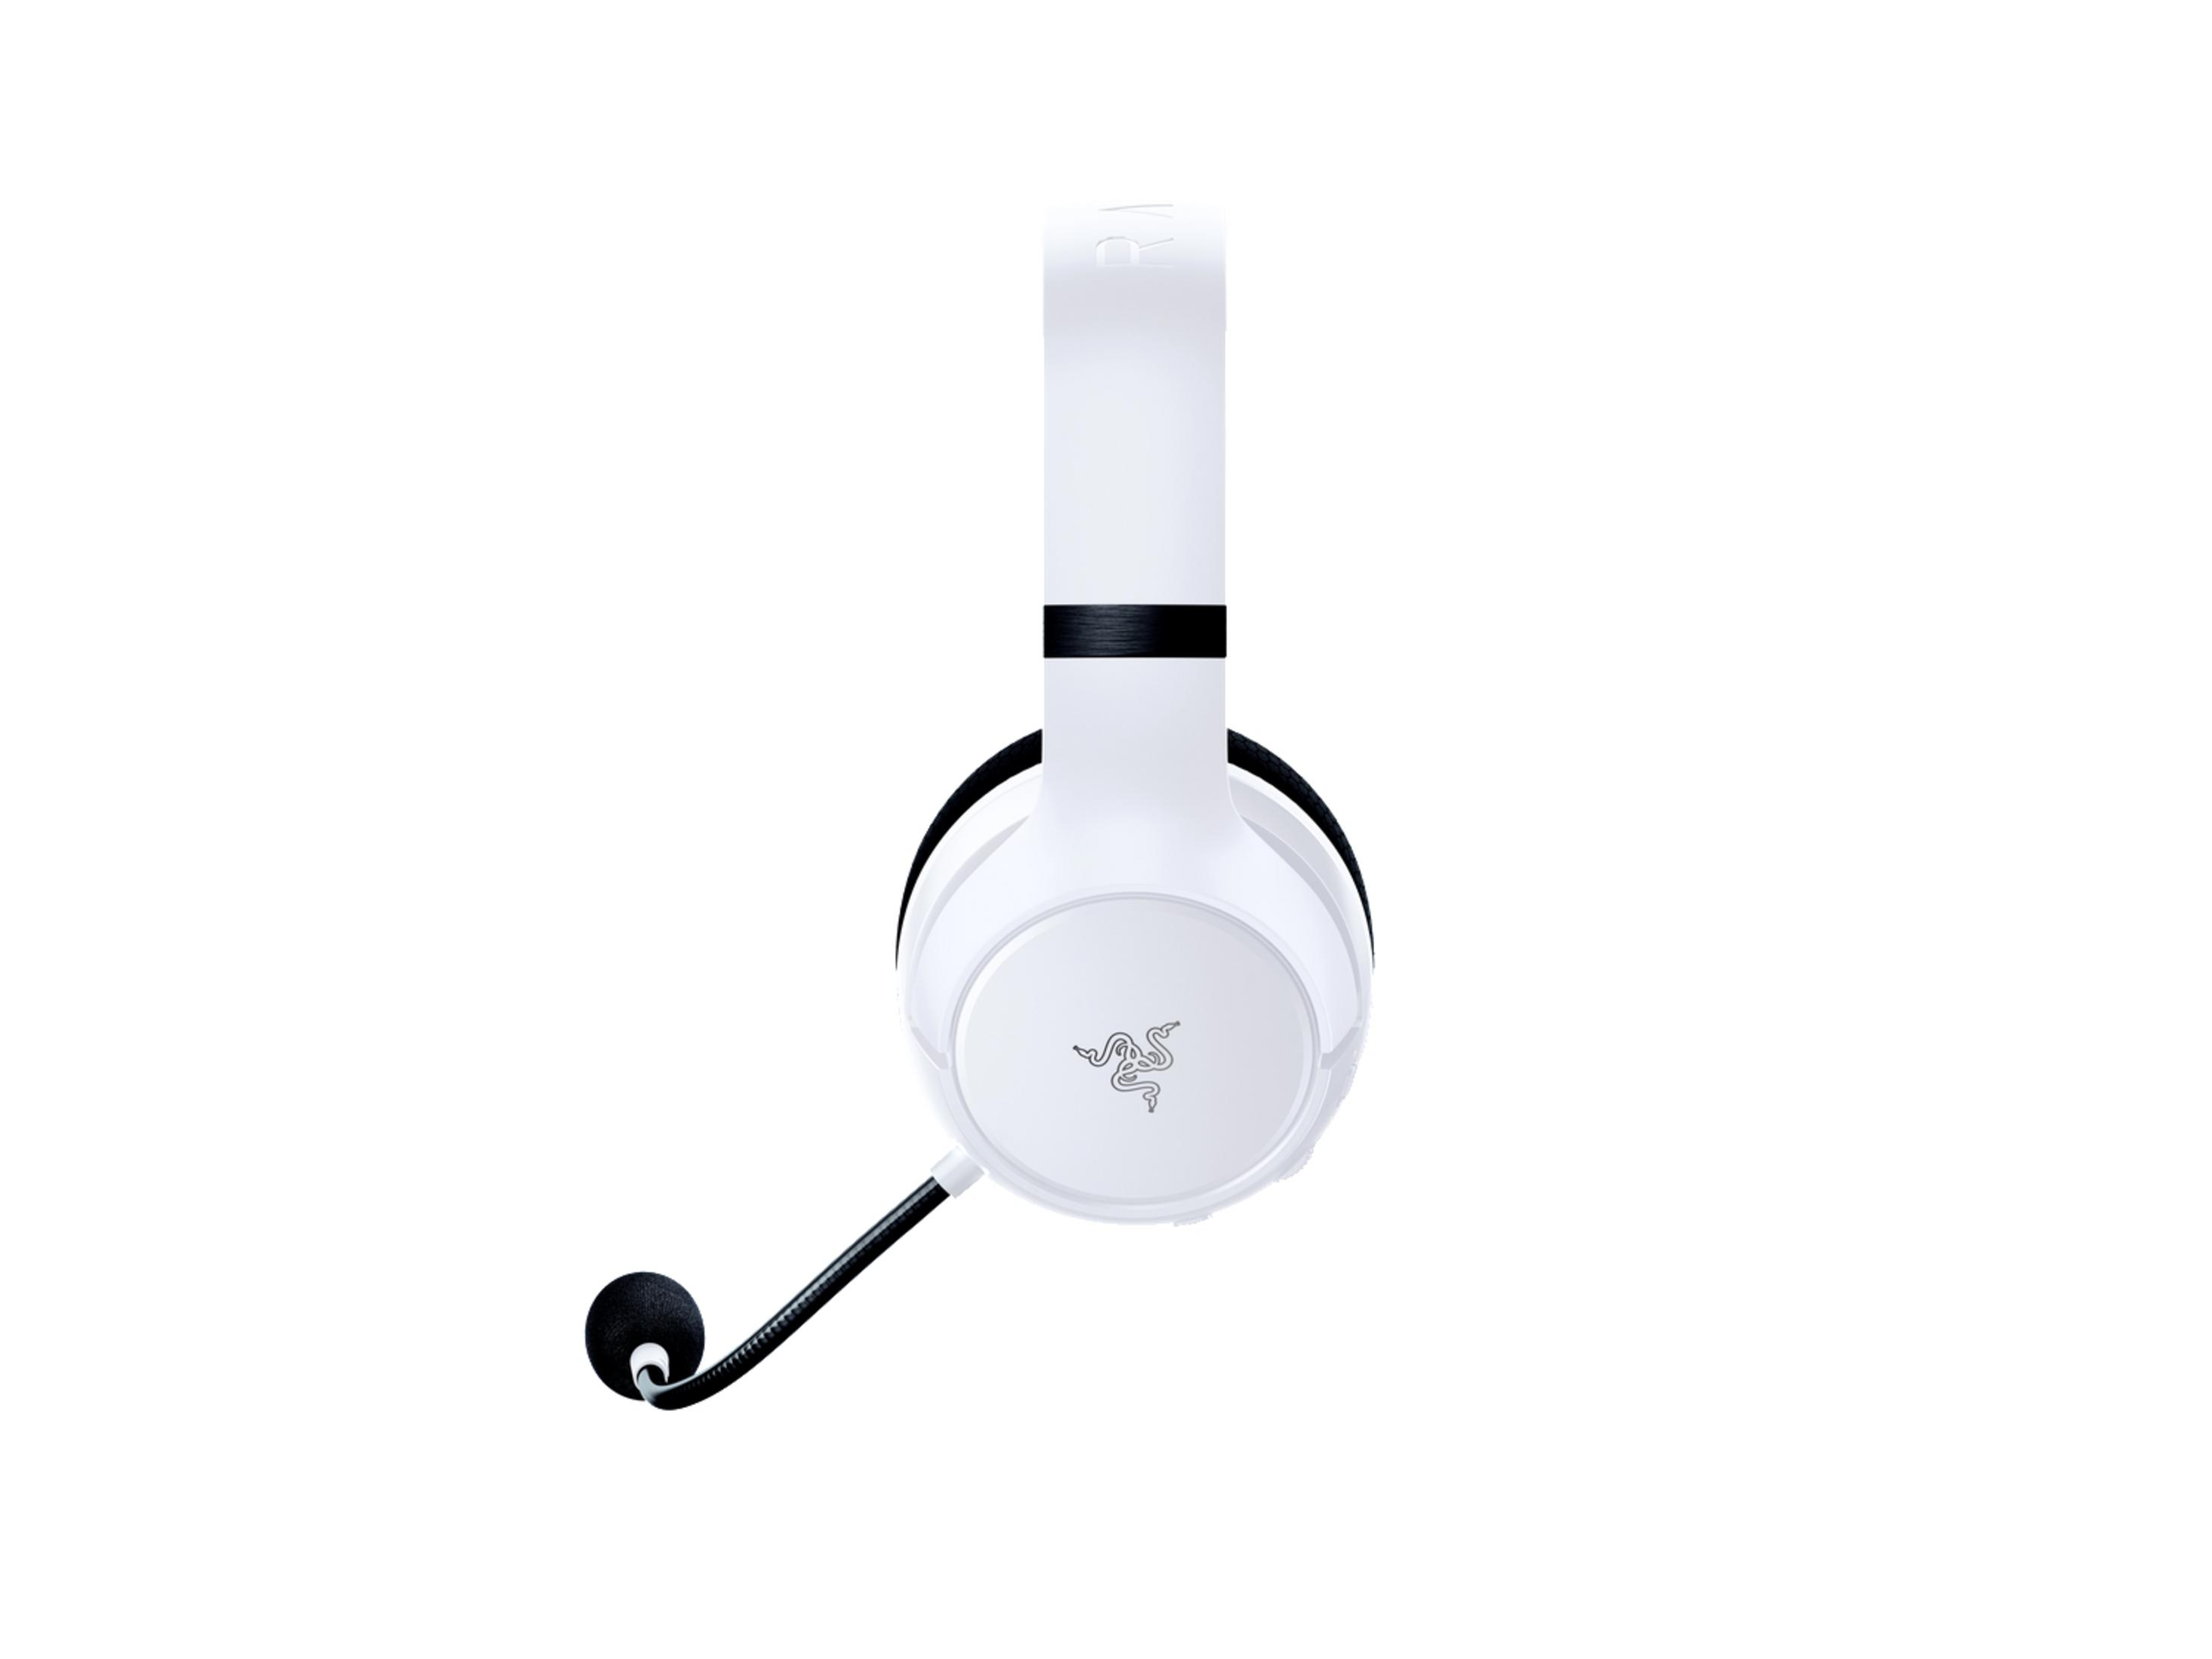 RAZER Kaira, Over-ear Xbox One Witz Bluetooth Series X/Xbox